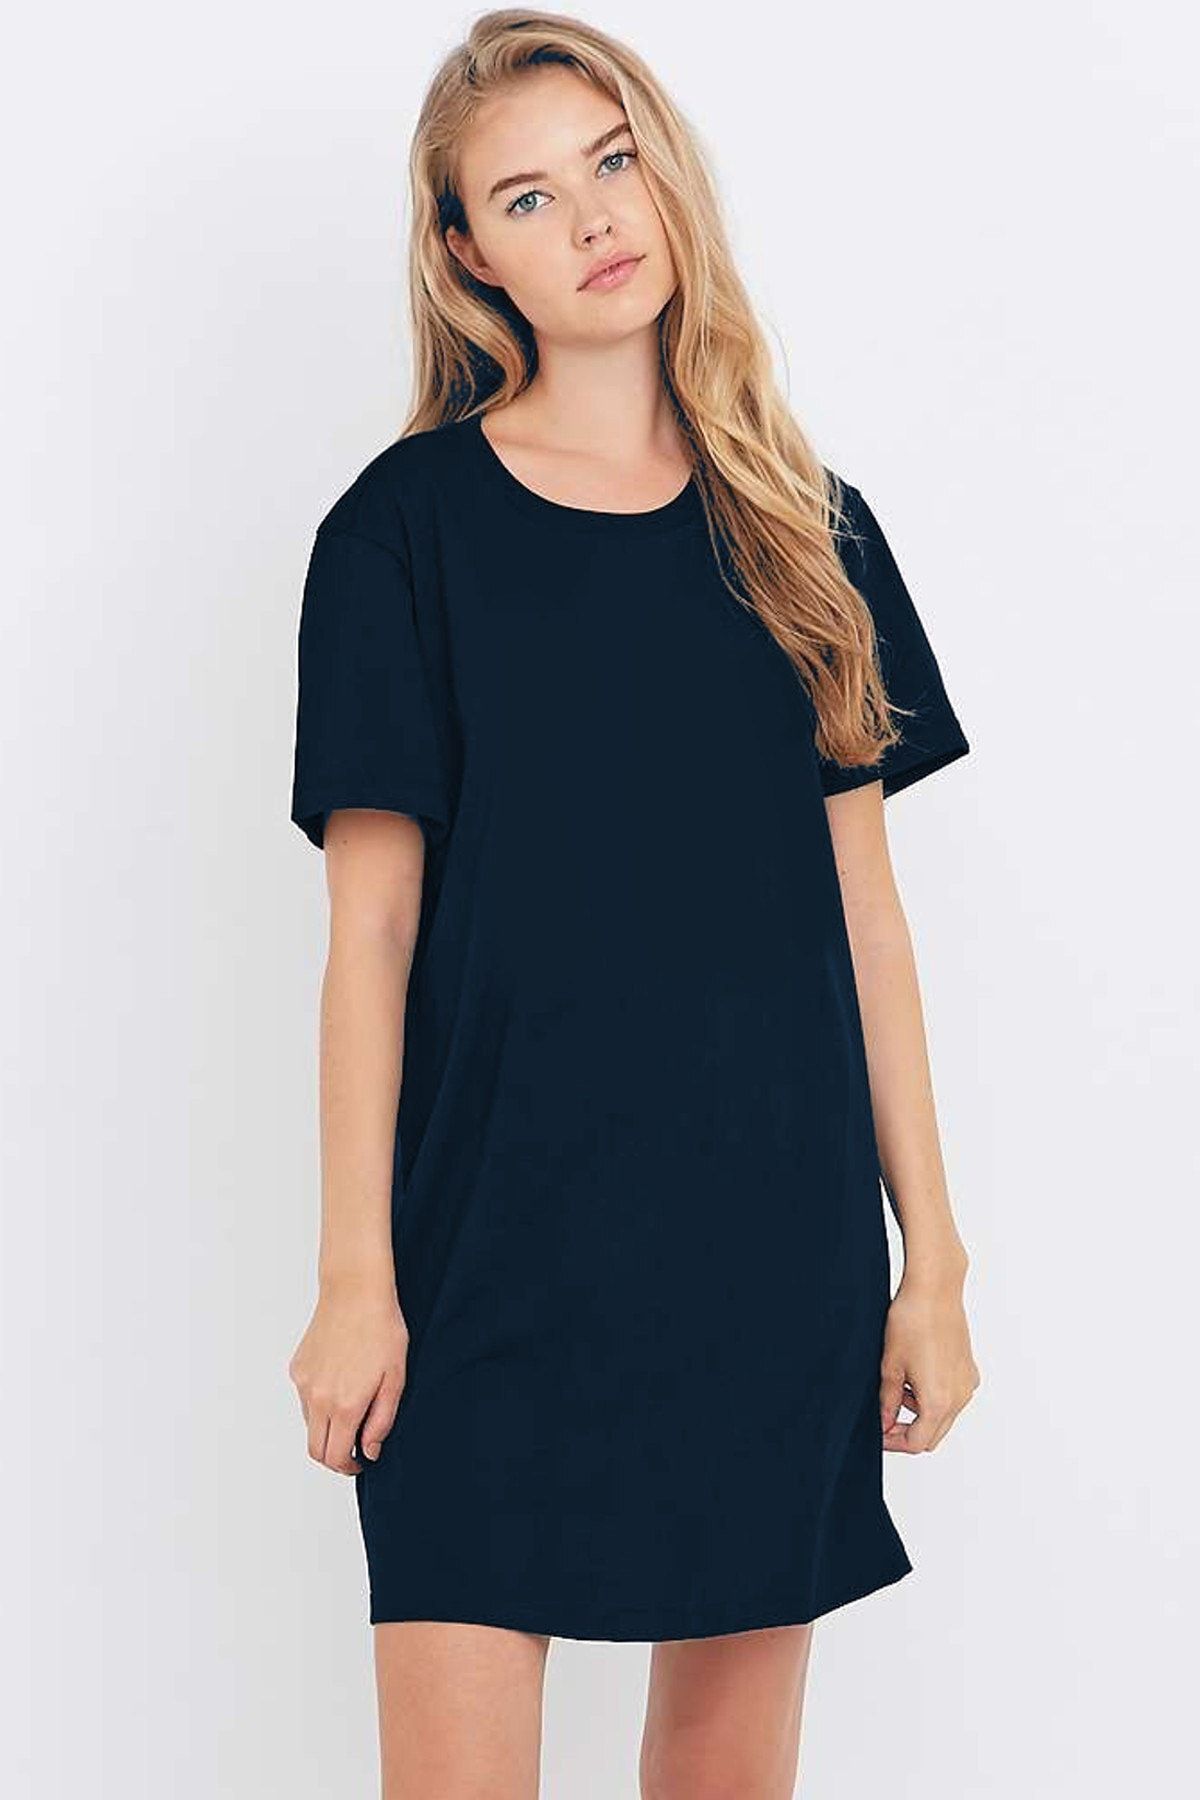 ROCKANDROLL Kadın Lacivert Düz, Baskısız Kısa Kollu Penye T-shirt Elbise